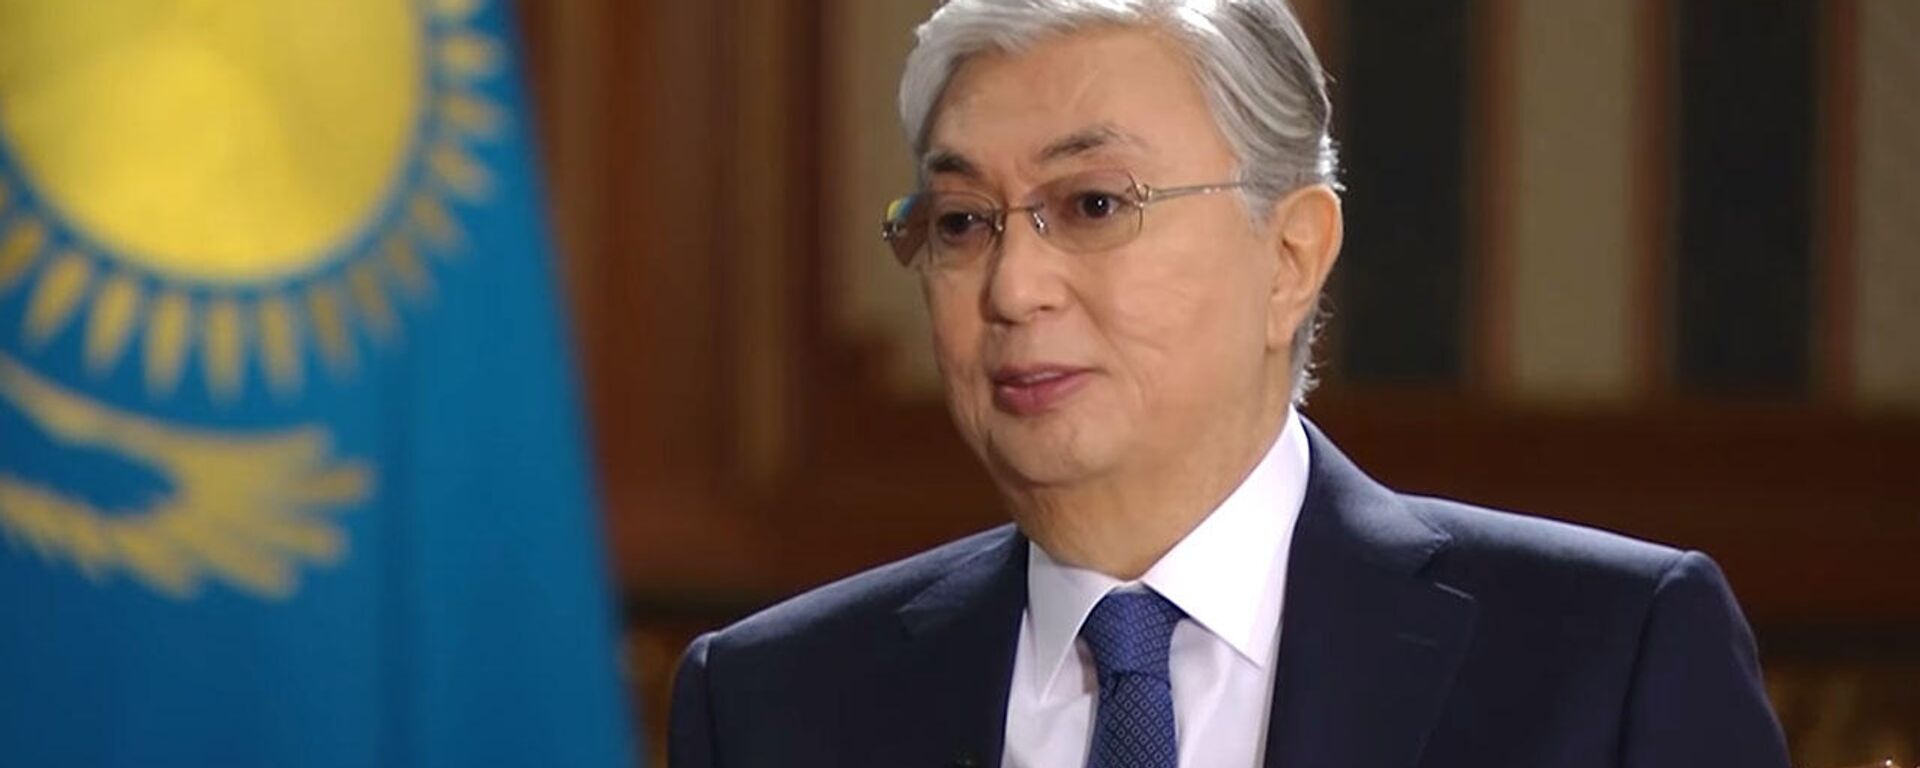 Токаев заявил, сколько времени пробудет президентом Казахстана — видео - Sputnik Кыргызстан, 1920, 29.01.2022